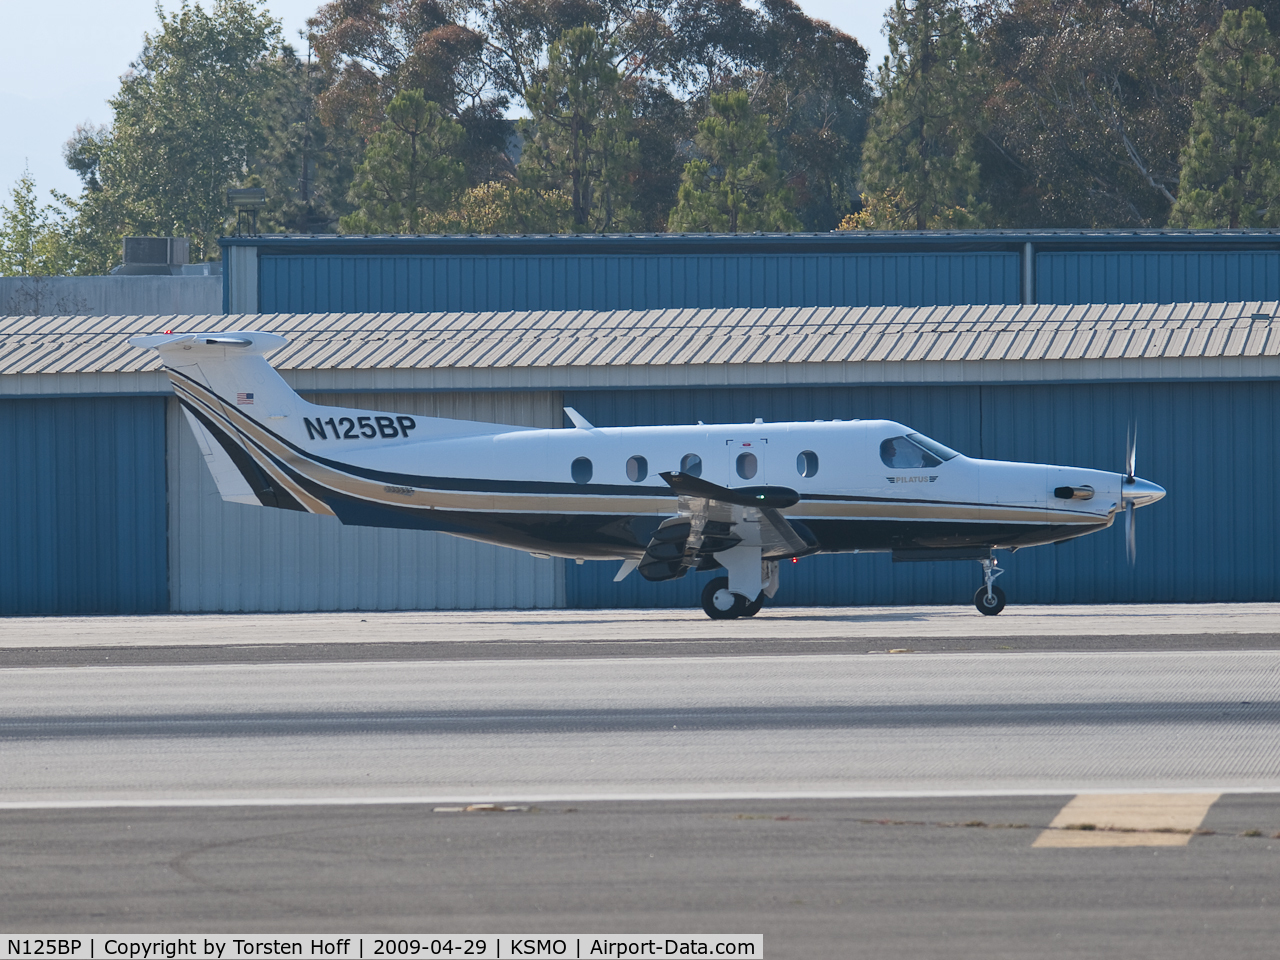 N125BP, 2008 Pilatus PC-12/47E C/N 1012, N125BP taxiing